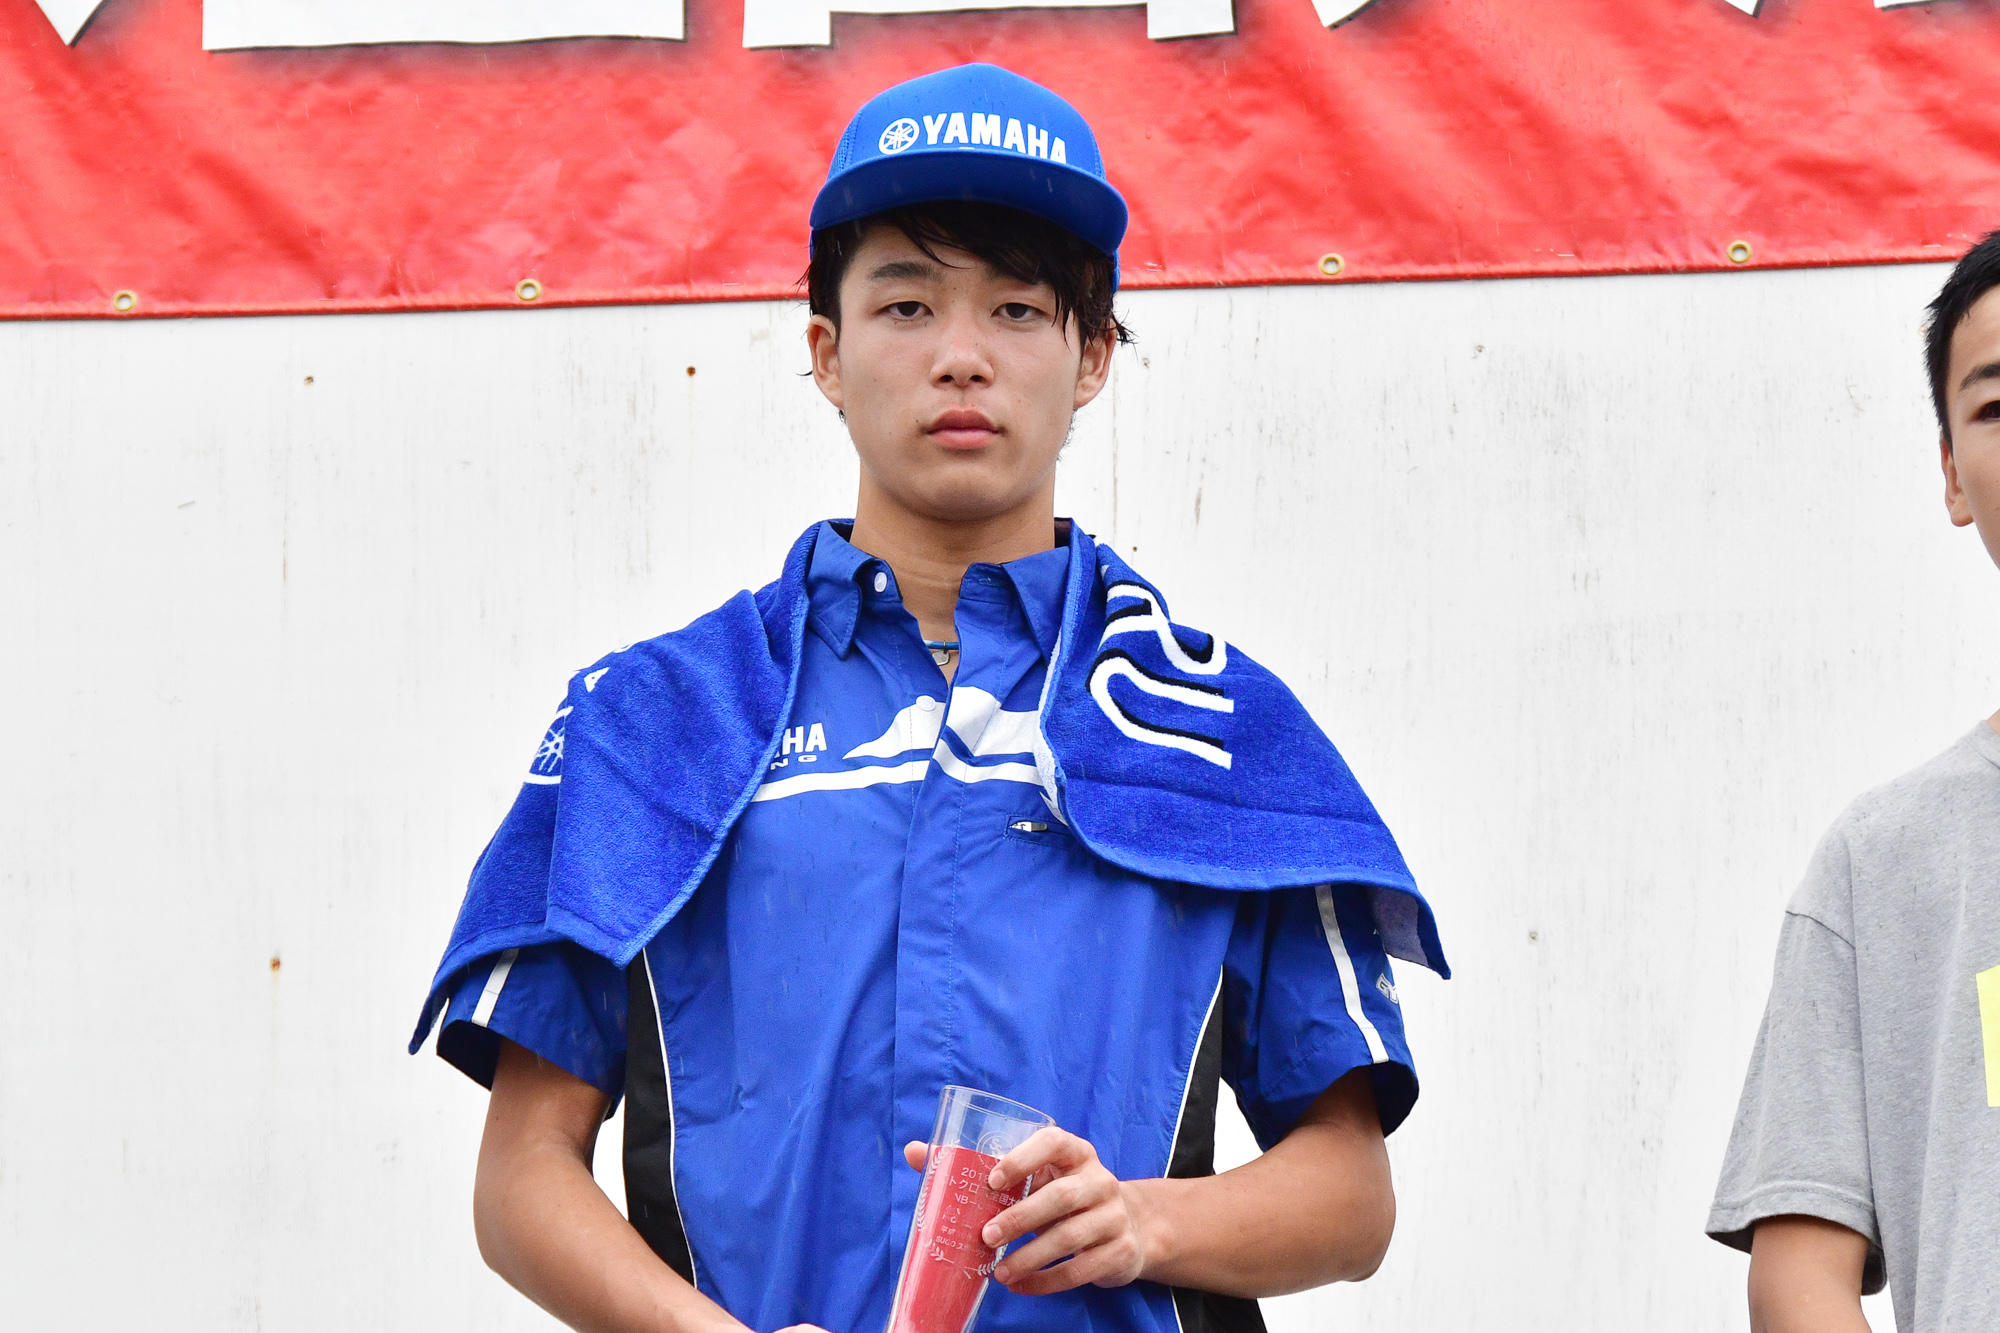 齋藤 銀汰選手（野田ジュニアRC）は第1レース6位・第2レース3位の総合4位に。